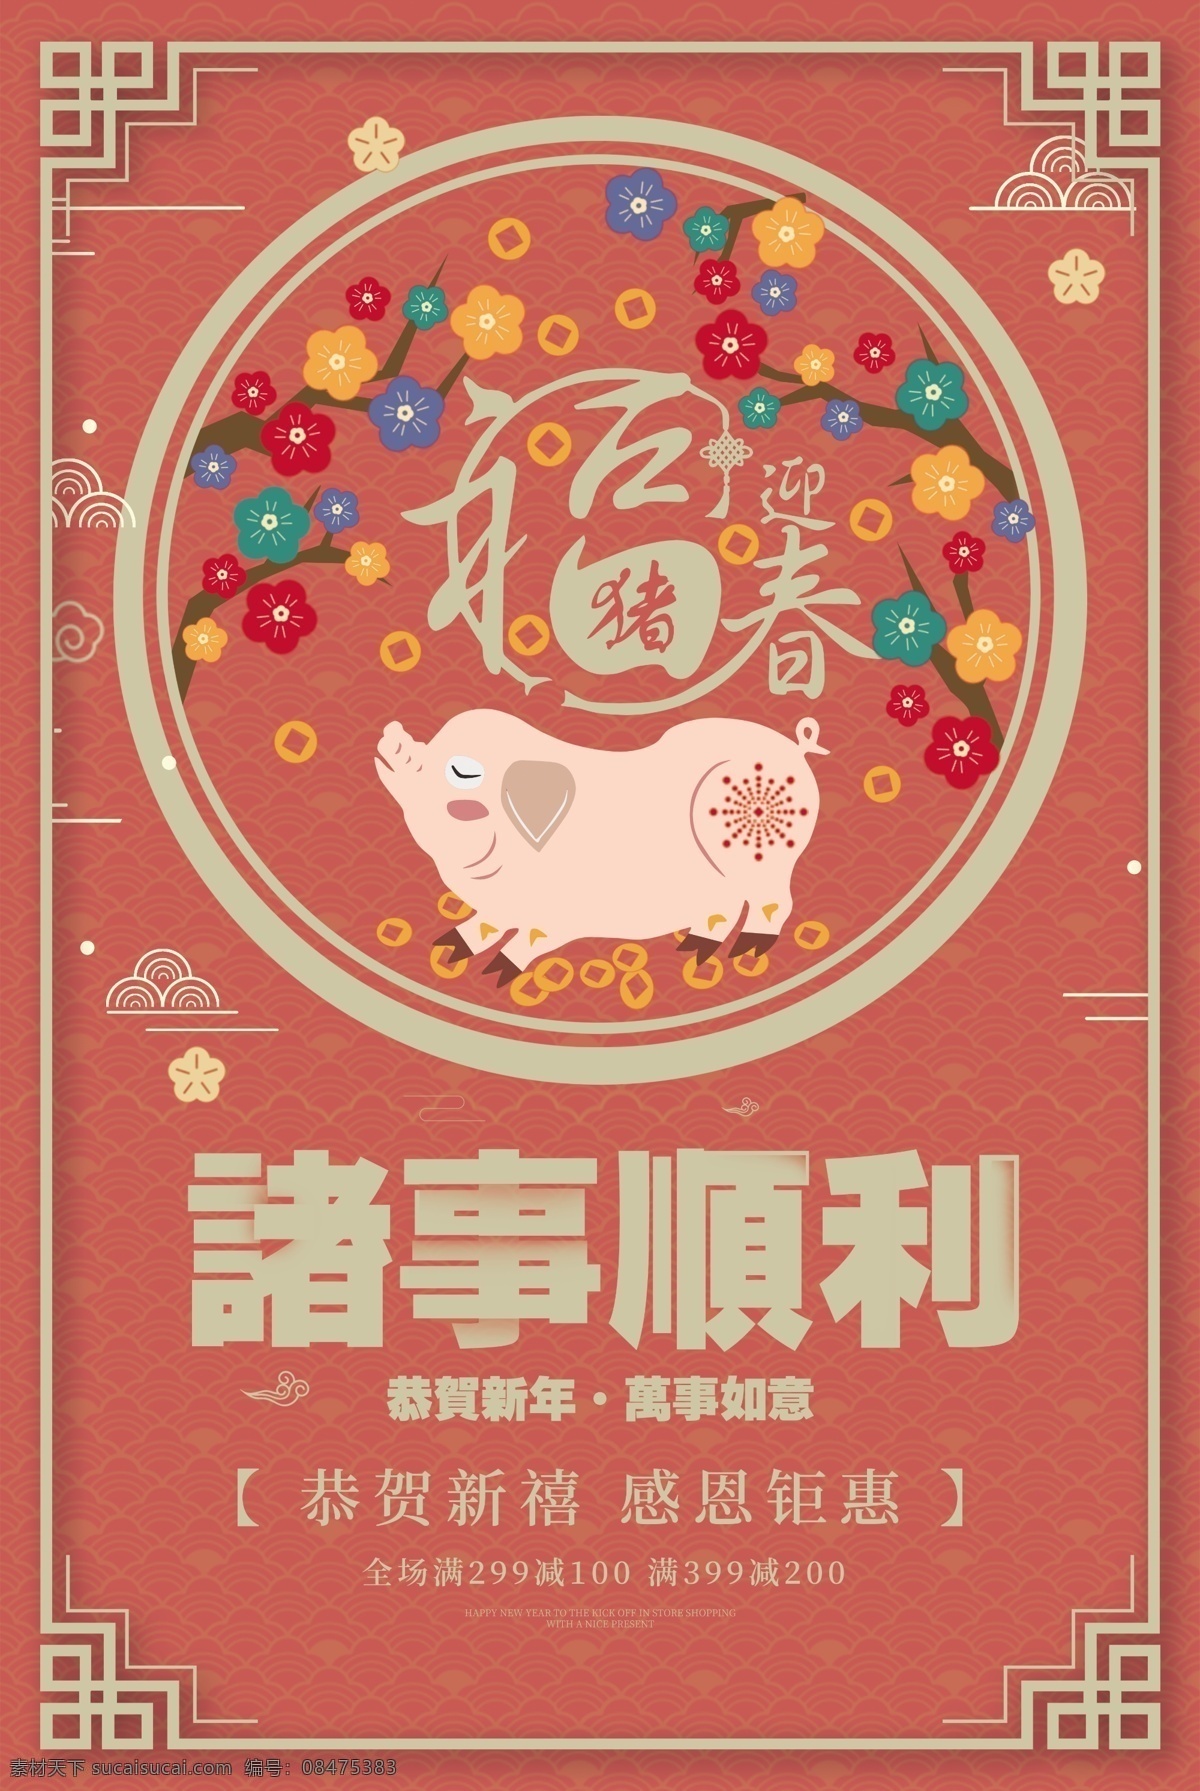 2019 诸事 顺利 新年 促销 猪年 诸事顺利 恭贺新年 新年快乐 新年海报 新年祝福 海报 猪 珊瑚橘